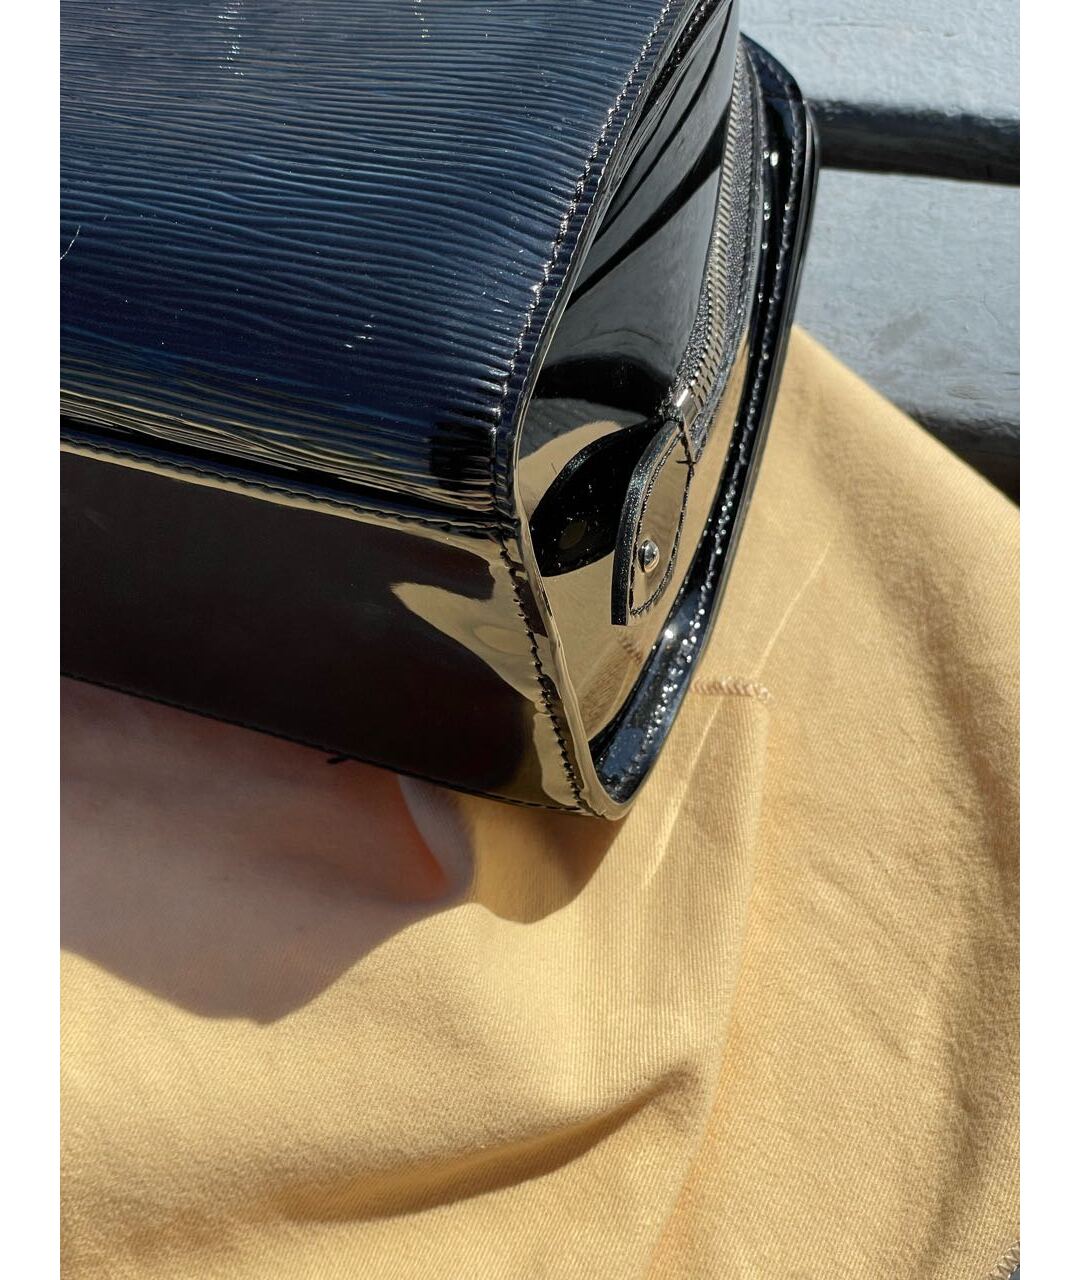 LOUIS VUITTON PRE-OWNED Черная сумка с короткими ручками из лакированной кожи, фото 2